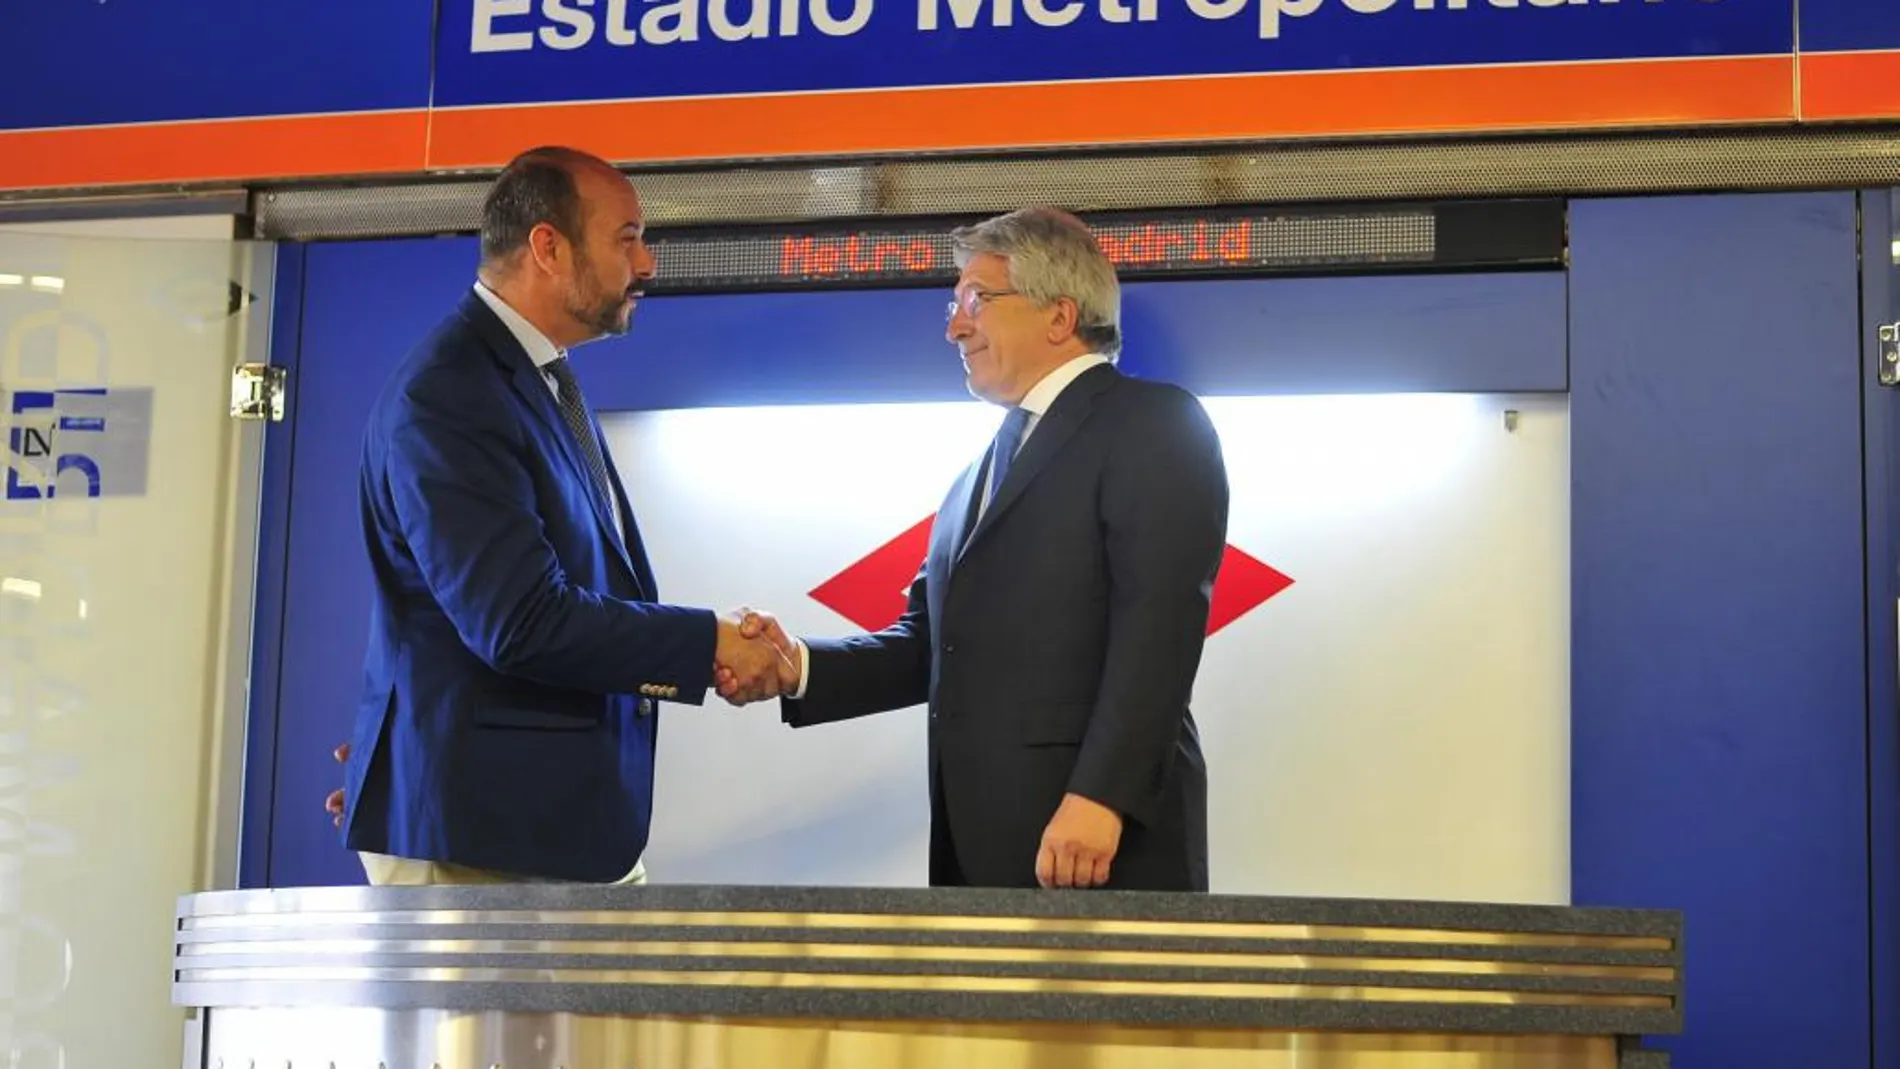 El presdinte del Atlético de Madrid, Enrique Cerezo (d), y el consejero de transportes, vivienda e infraestructuras de la Comunidad de Madrid, Pedro Manuel Rollán Ojeda.